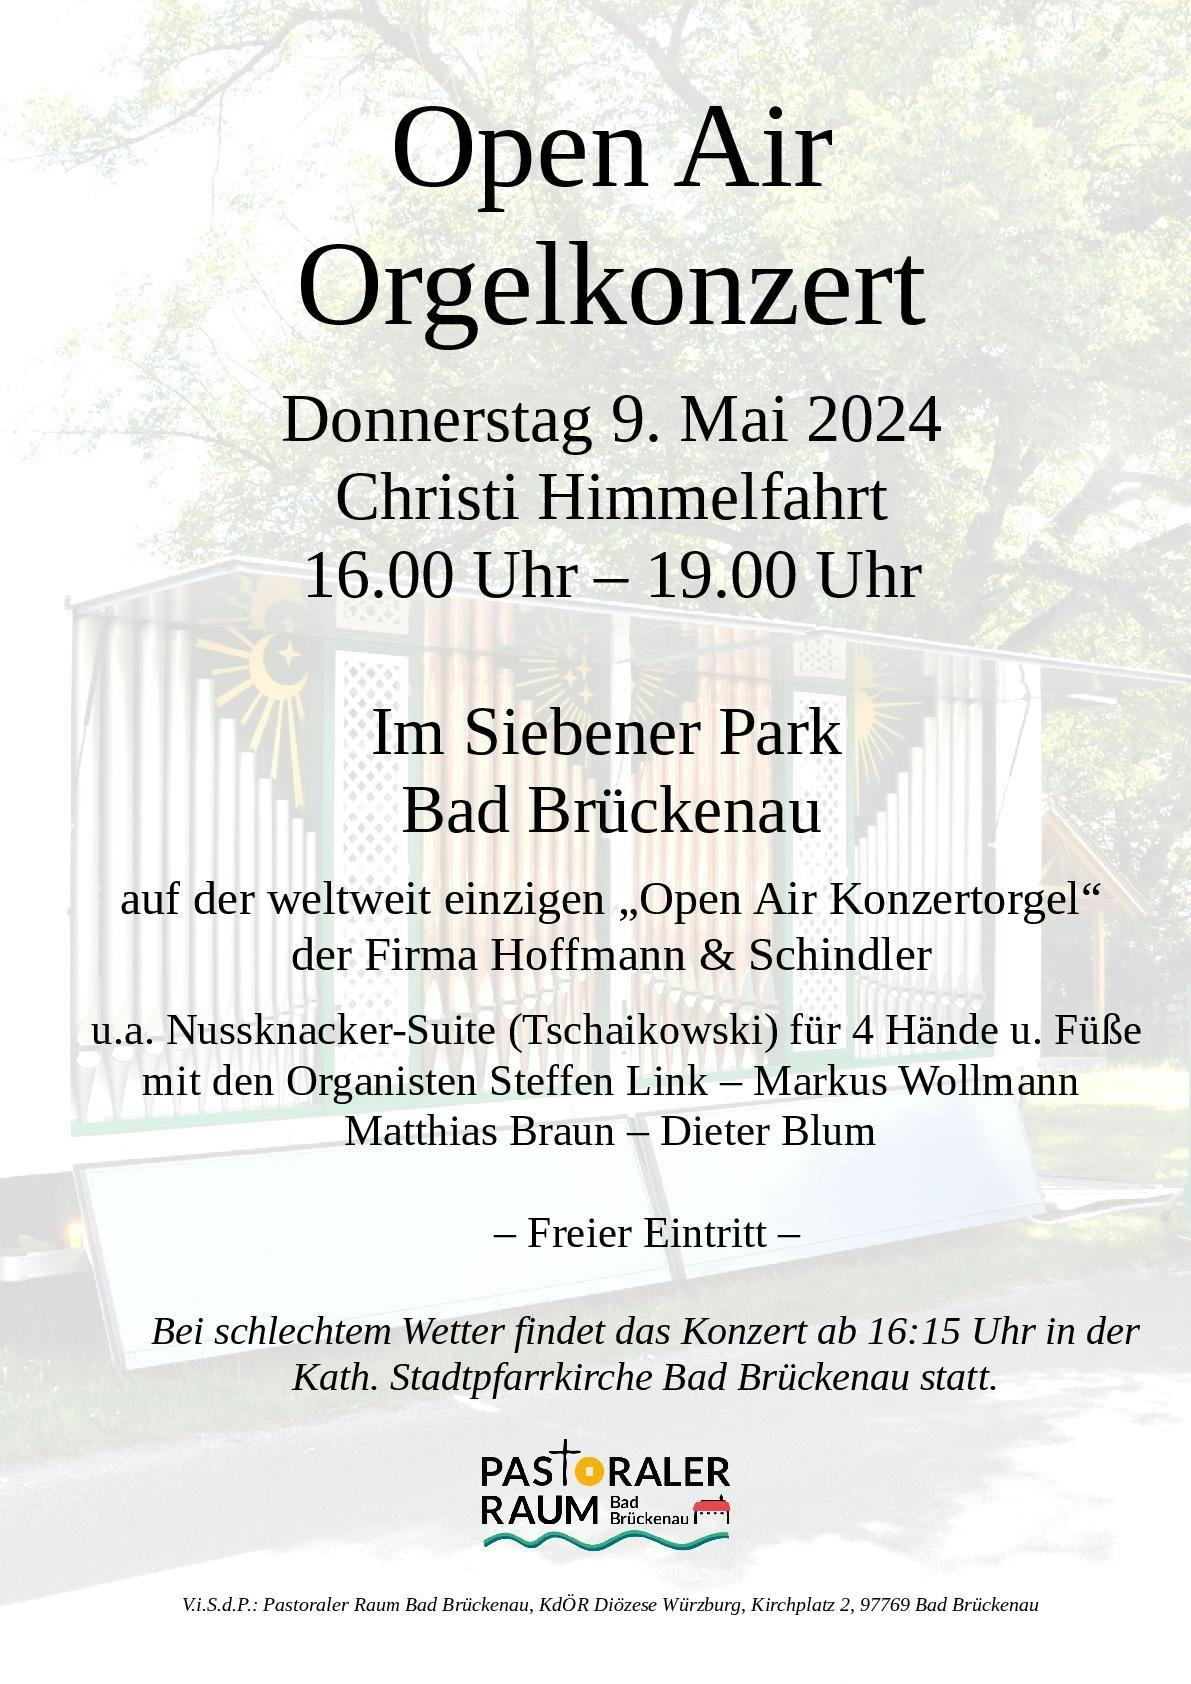 Open Air Orgelkonzert